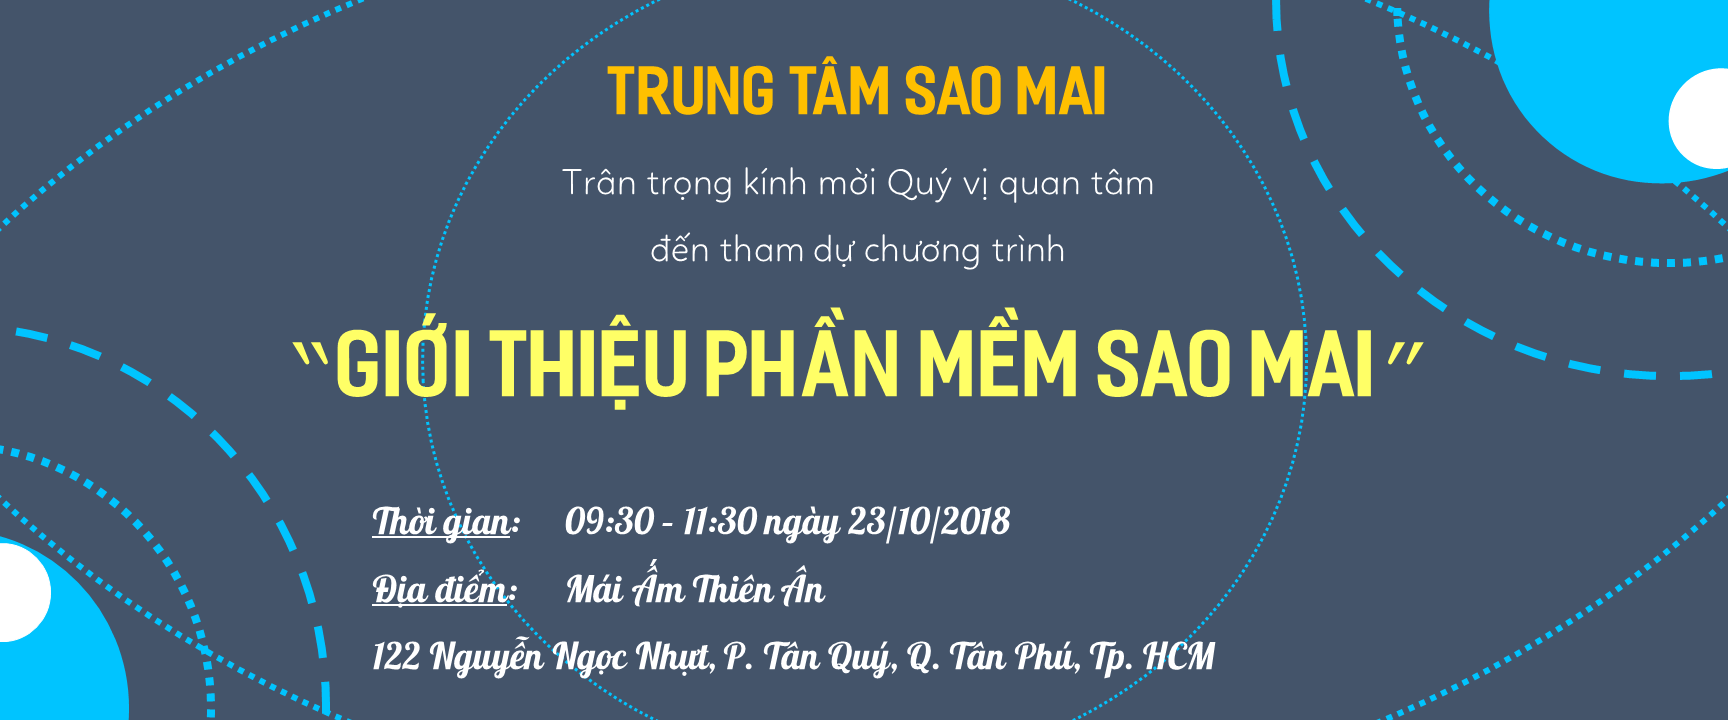 Thời gian: 9:30 - 11:30 ngày 23/10/2018 tại Mái Ấm Thiên Ân, 122 Nguyễn Ngọc Nhựt, P. Tân Quý, Q. Tân Phú, Tp. HCM